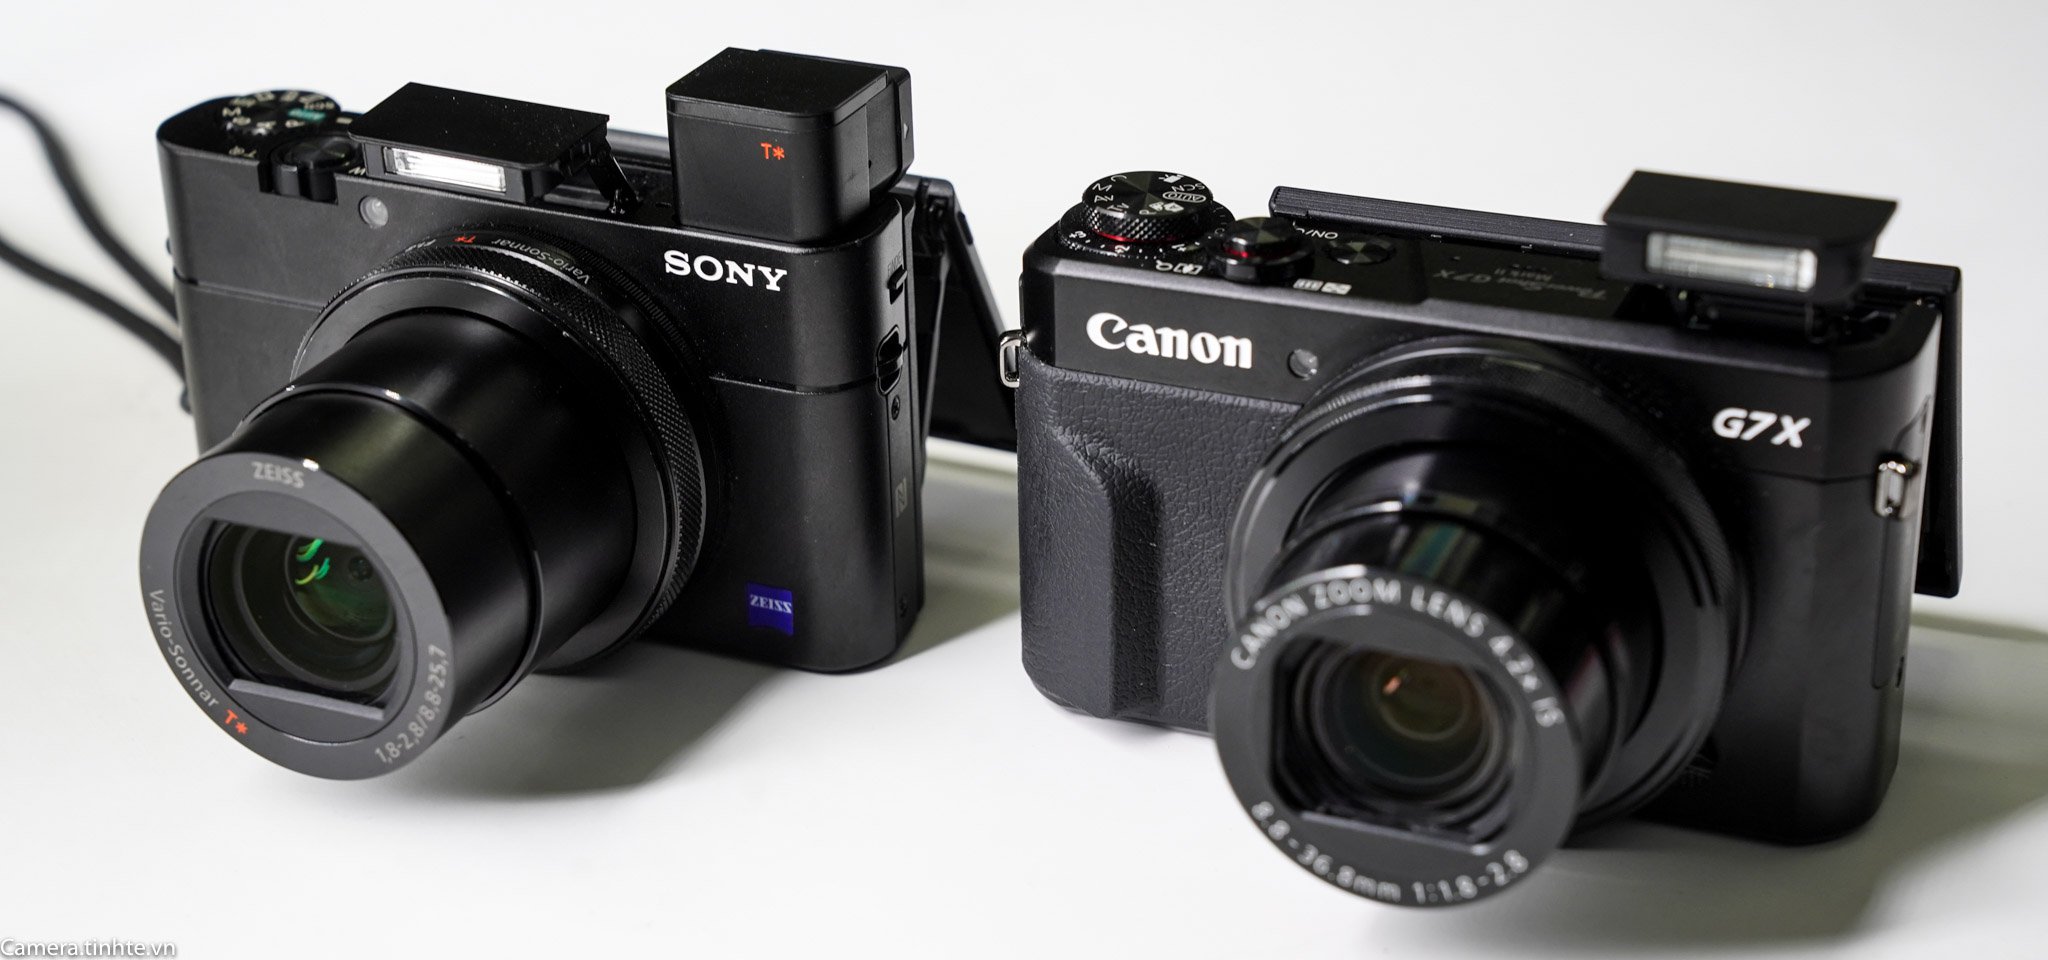 Đang tải SOny RX100V vs Canon G7X II - Camera.tinhte.vn -1.jpg…